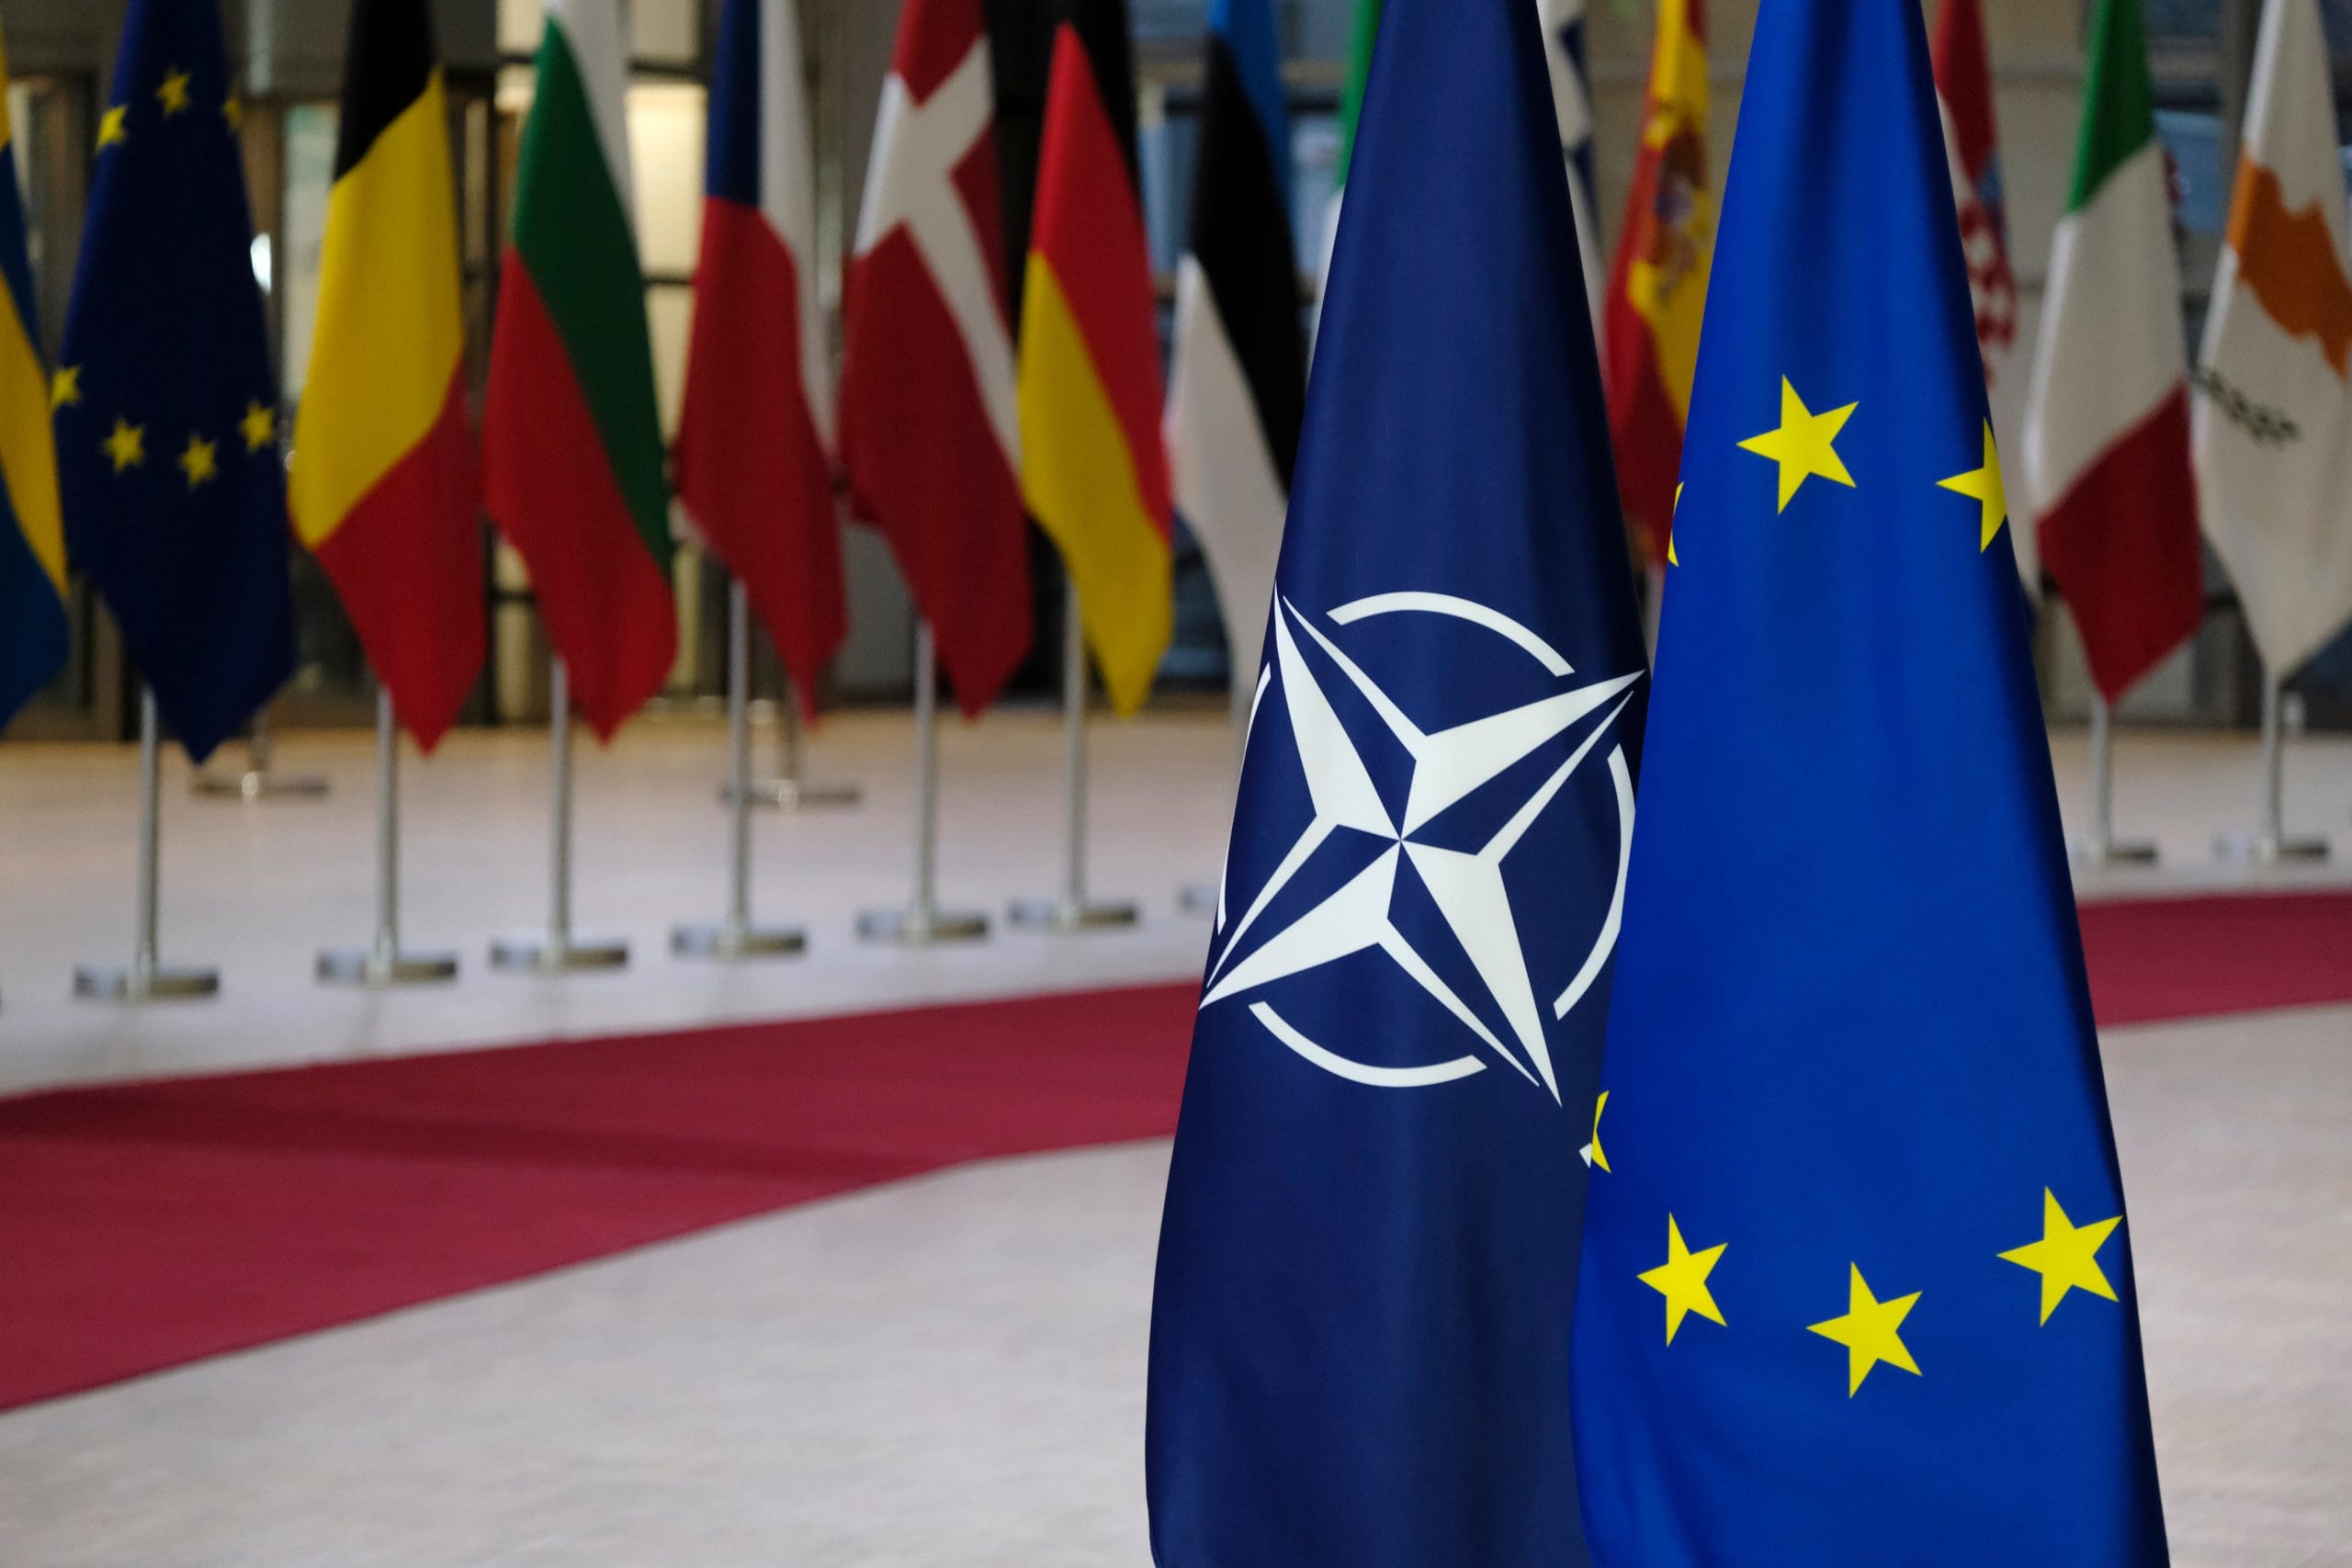 Le project de defense européenne dont on parle au Conseil européen est mort-né